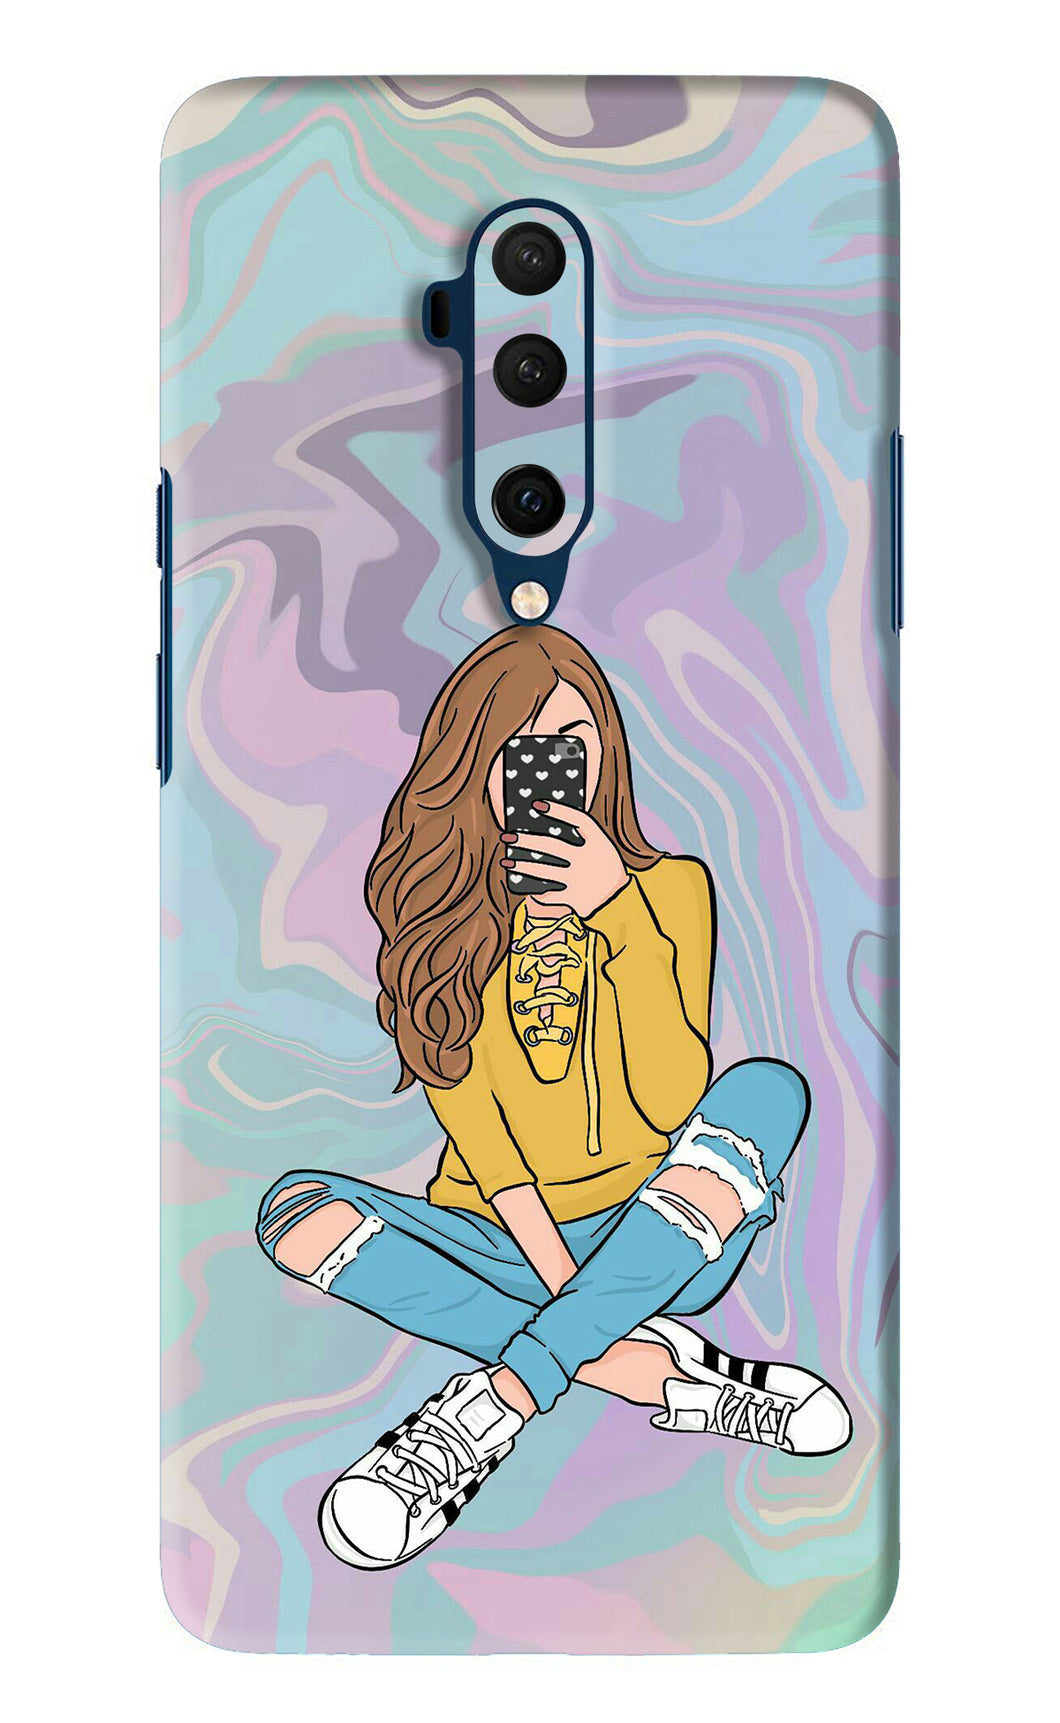 Selfie Girl OnePlus 7T Pro Back Skin Wrap